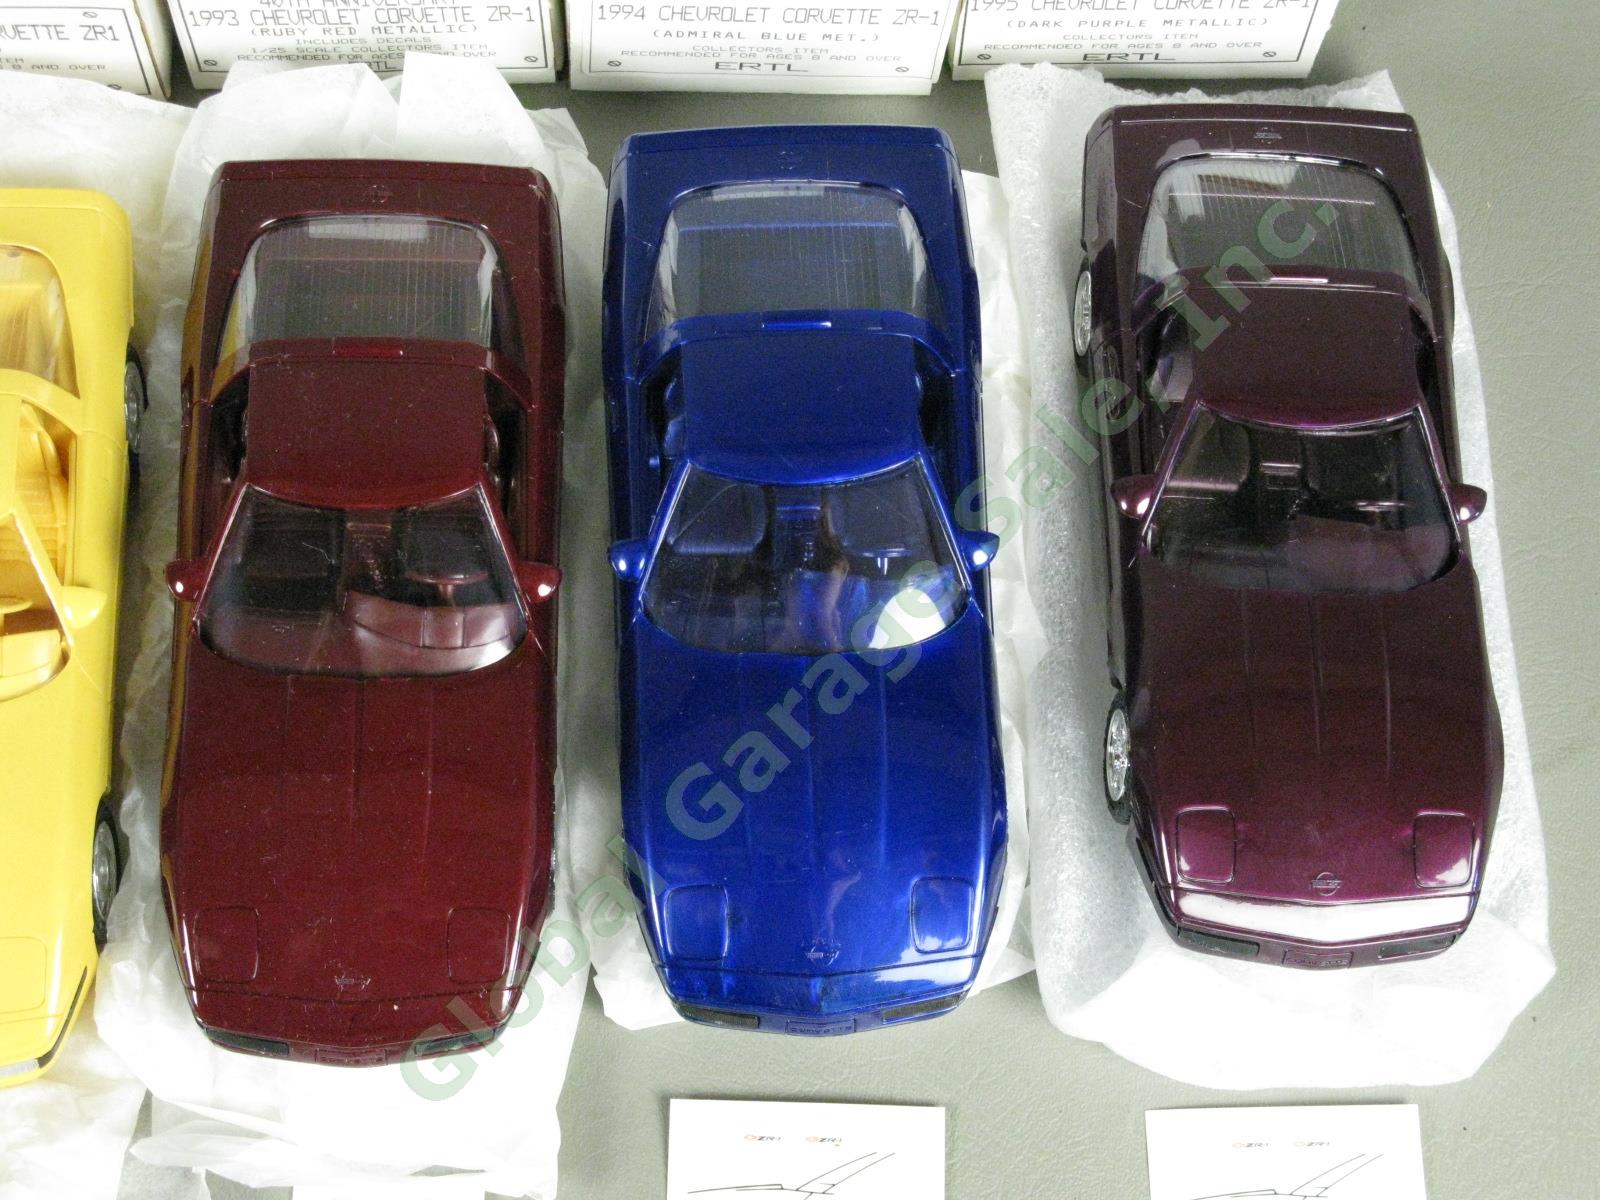 9 Ertl Chevrolet Corvette Plastic Dealer Promo Model Car Lot Set ZR-1 1989-95 NR 6